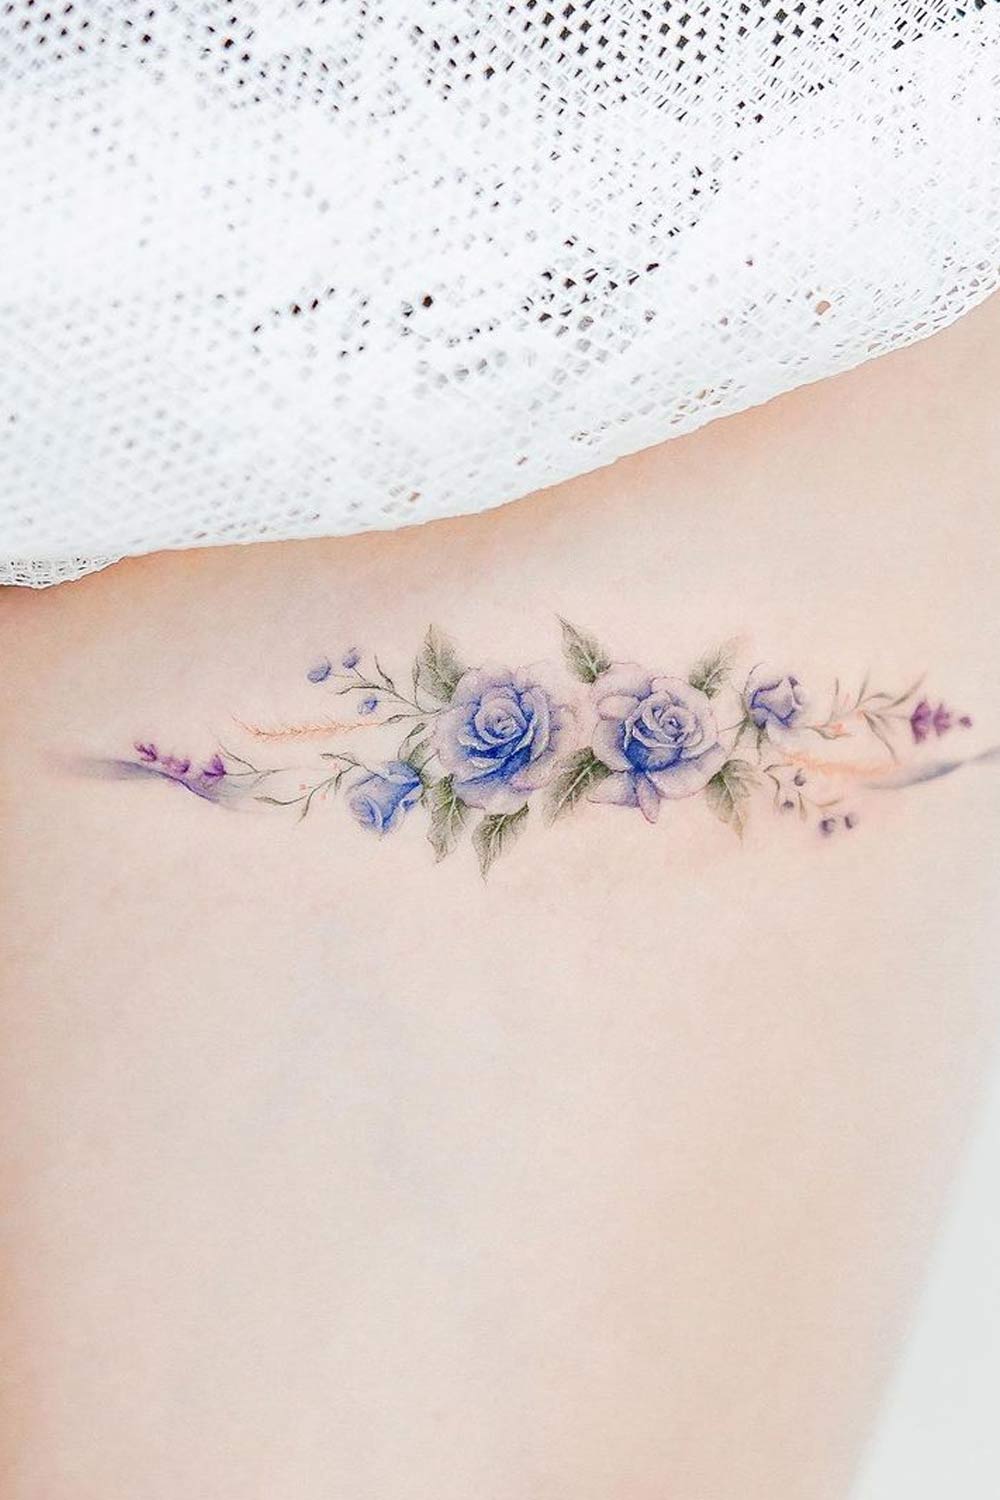 Blue Roses Tattoo Design for Leg